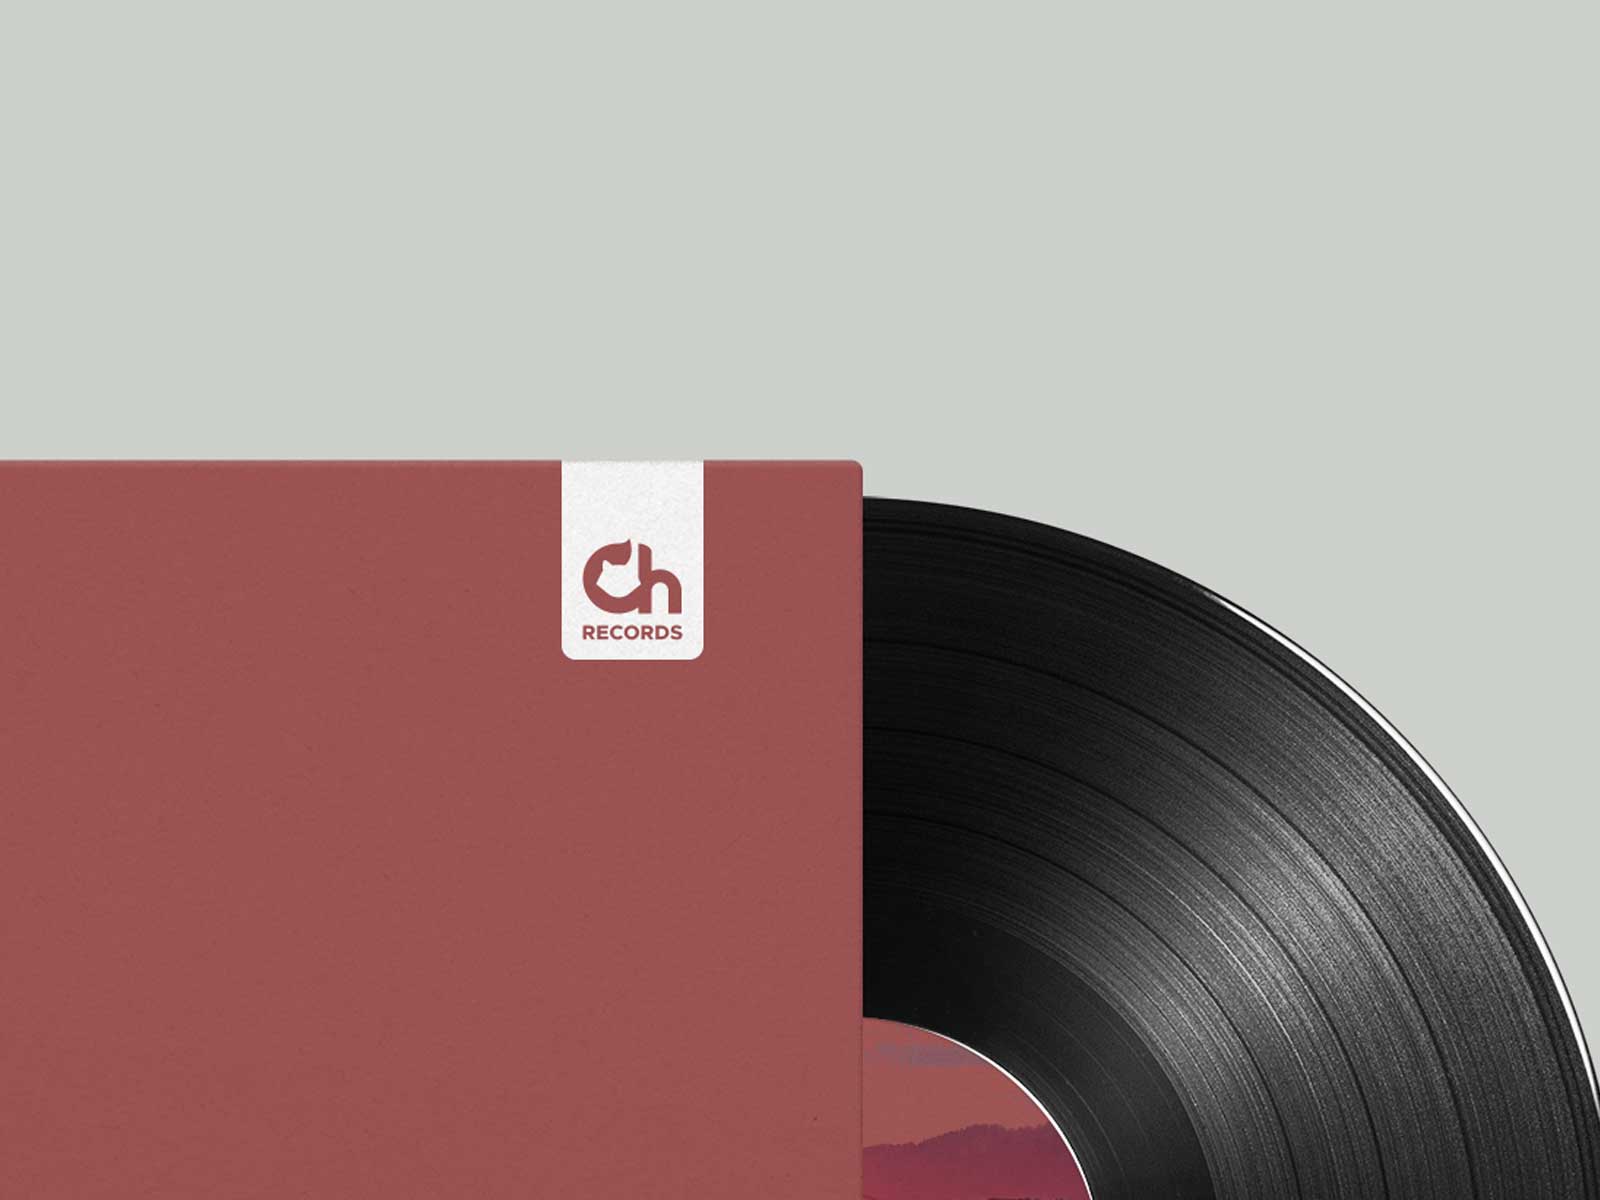 Chillhop Records new logo vinyl record packaging branding